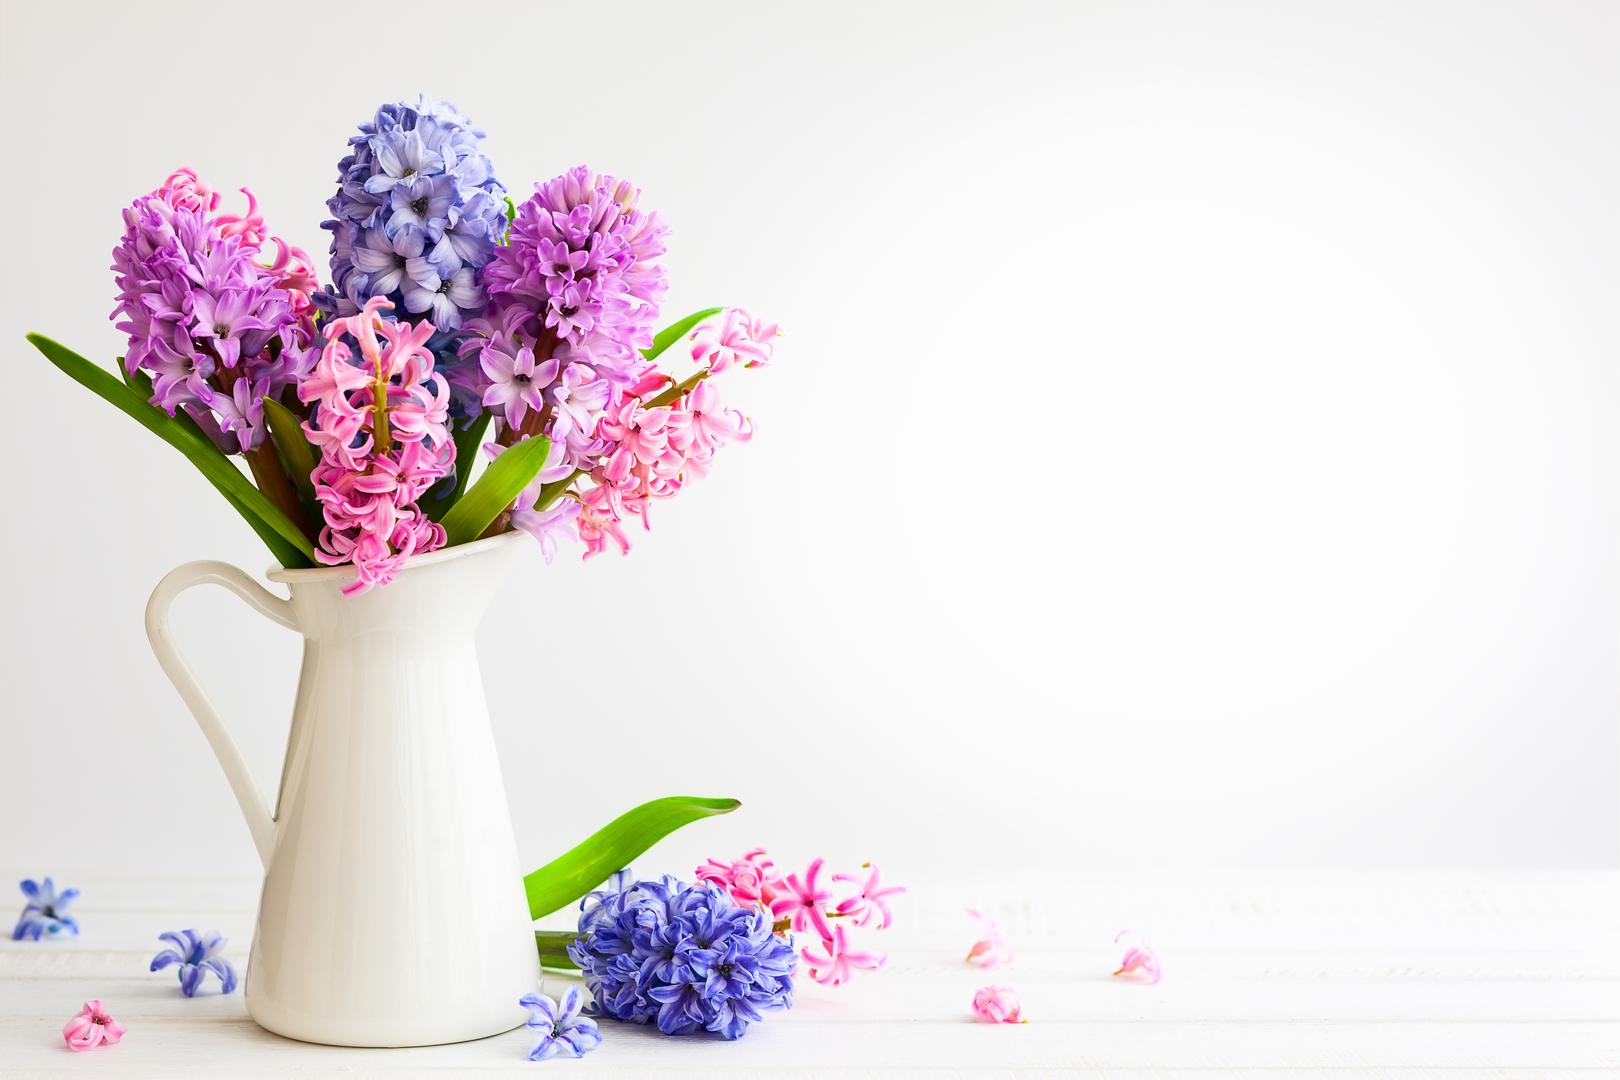 Specifično proljetno cvijeće: Nedvojbeno, jedno od najboljih vremena za provođenje vremena u vašem vrtu je proljeće. To je i vrijeme kad neki od najomiljenijih cvjetova cvjetaju u našim vrtovima. Međutim, te šarene biljke koje jedva čekate dočekati svake godine također su potencijalno opasne za pse. ‘Narcisi i tulipani možda su popularno ranoproljetno cvijeće, ali također sadrže otrovni alkaloid koji kod kućnih ljubimaca izaziva povraćanje, nizak krvni tlak i grčeve’, upozorava  stručnjak za pse AJ Arapovic, ‘Zumbuli imaju visoko toksične kristale koji mogu dovesti do srčanih aritmija ili problema s disanjem. Simptomi se obično manifestiraju između 15 minuta do jednog dana’. 